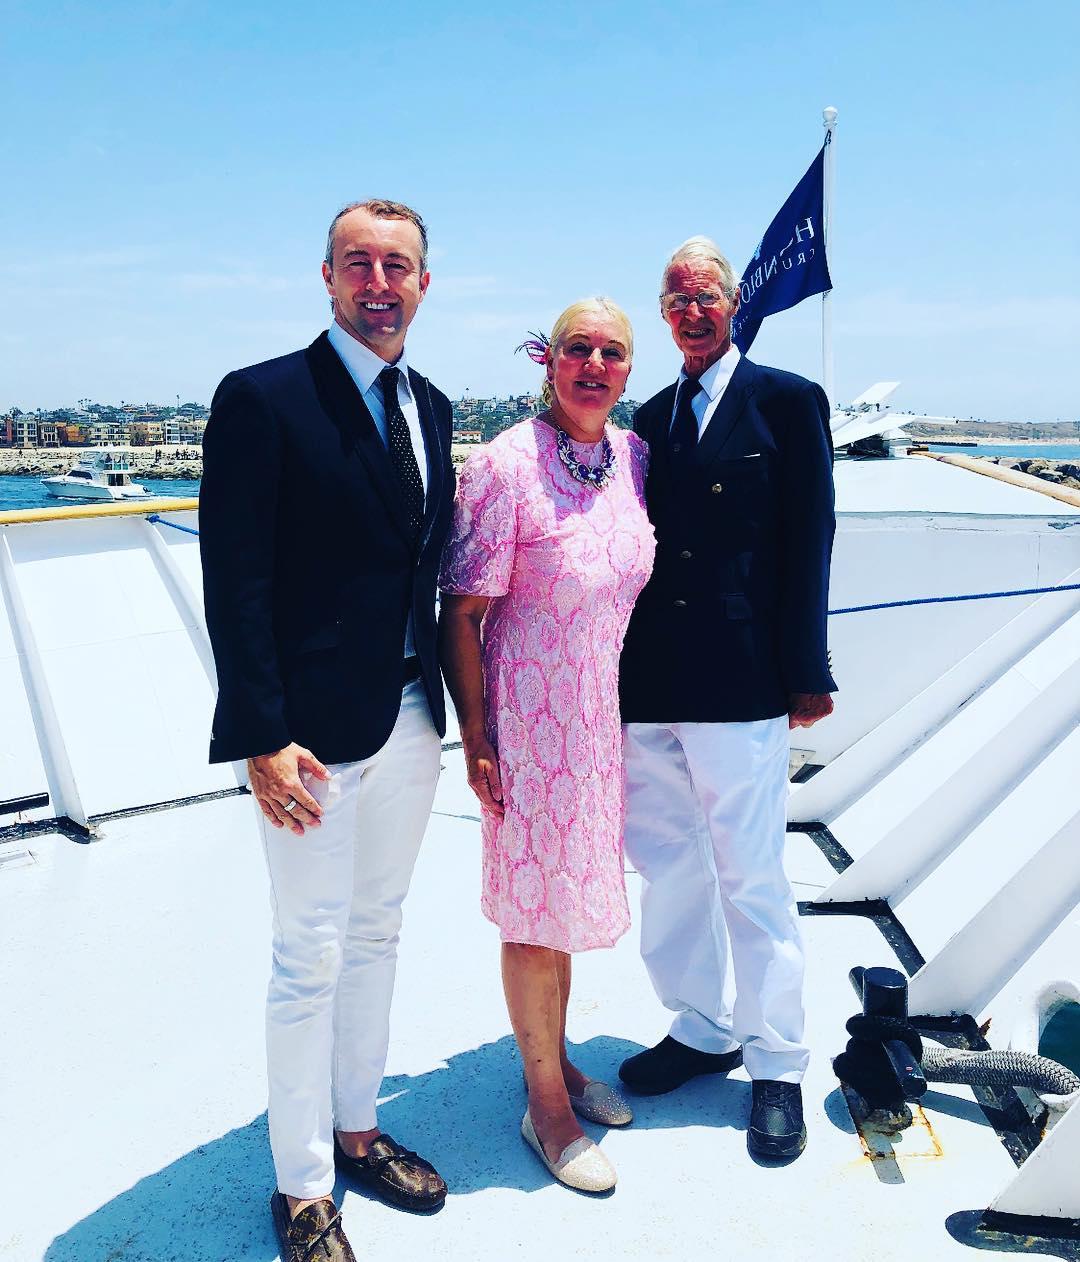 Príncipe Mario-Max Schaumburg-L. el: “El domingo es Yacht Funday ❤️ ¡La familia principesca les desea un feliz verano! #princemariomaxschaumburglippe #royals #royalty #fit…”